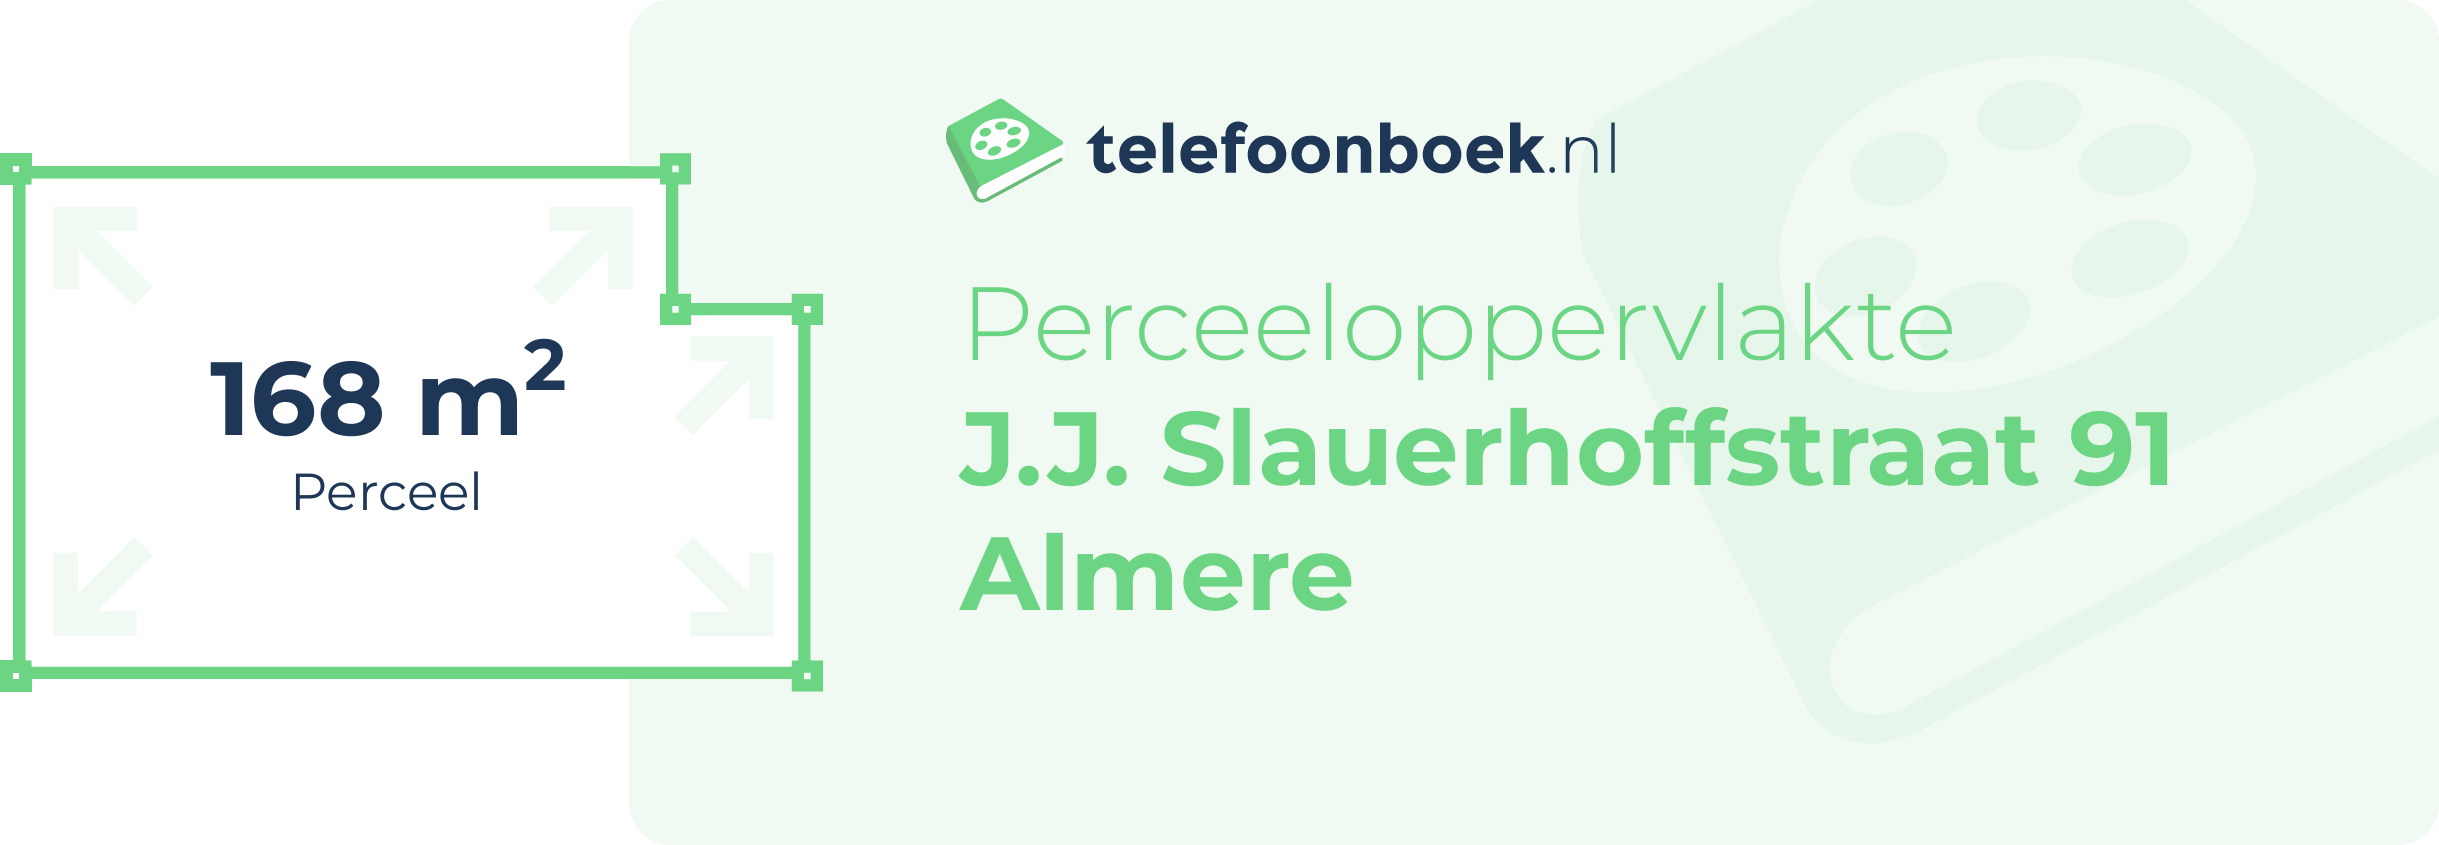 Perceeloppervlakte J.J. Slauerhoffstraat 91 Almere